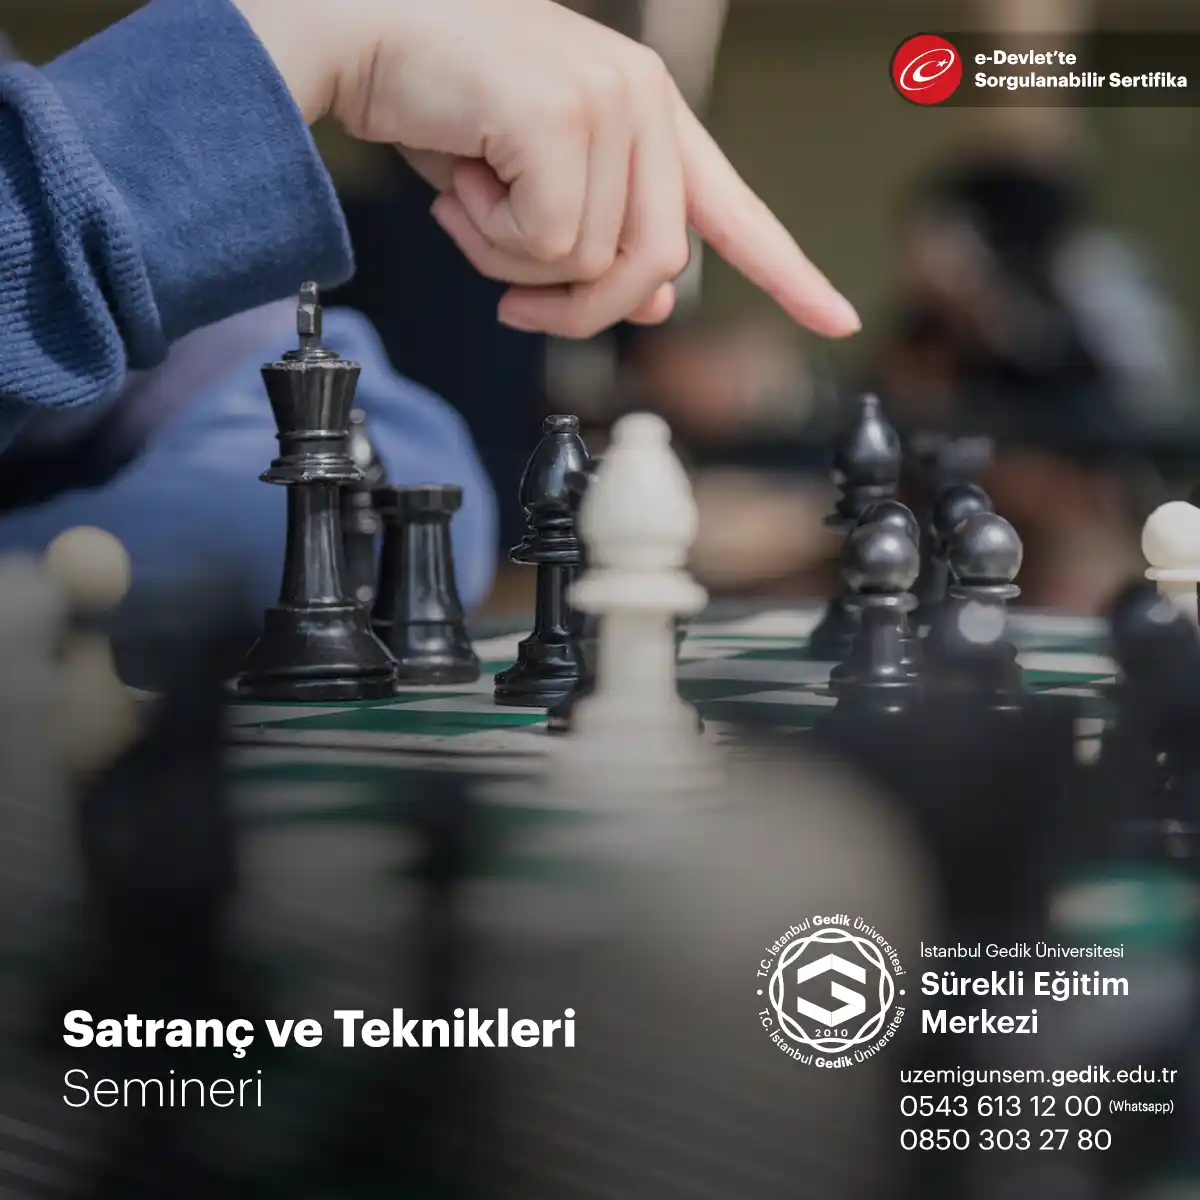 Satranç, strateji ve zeka oyunlarının en klasik örneğidir ve dünya genelinde binlerce yıldır oynanmaktadır.